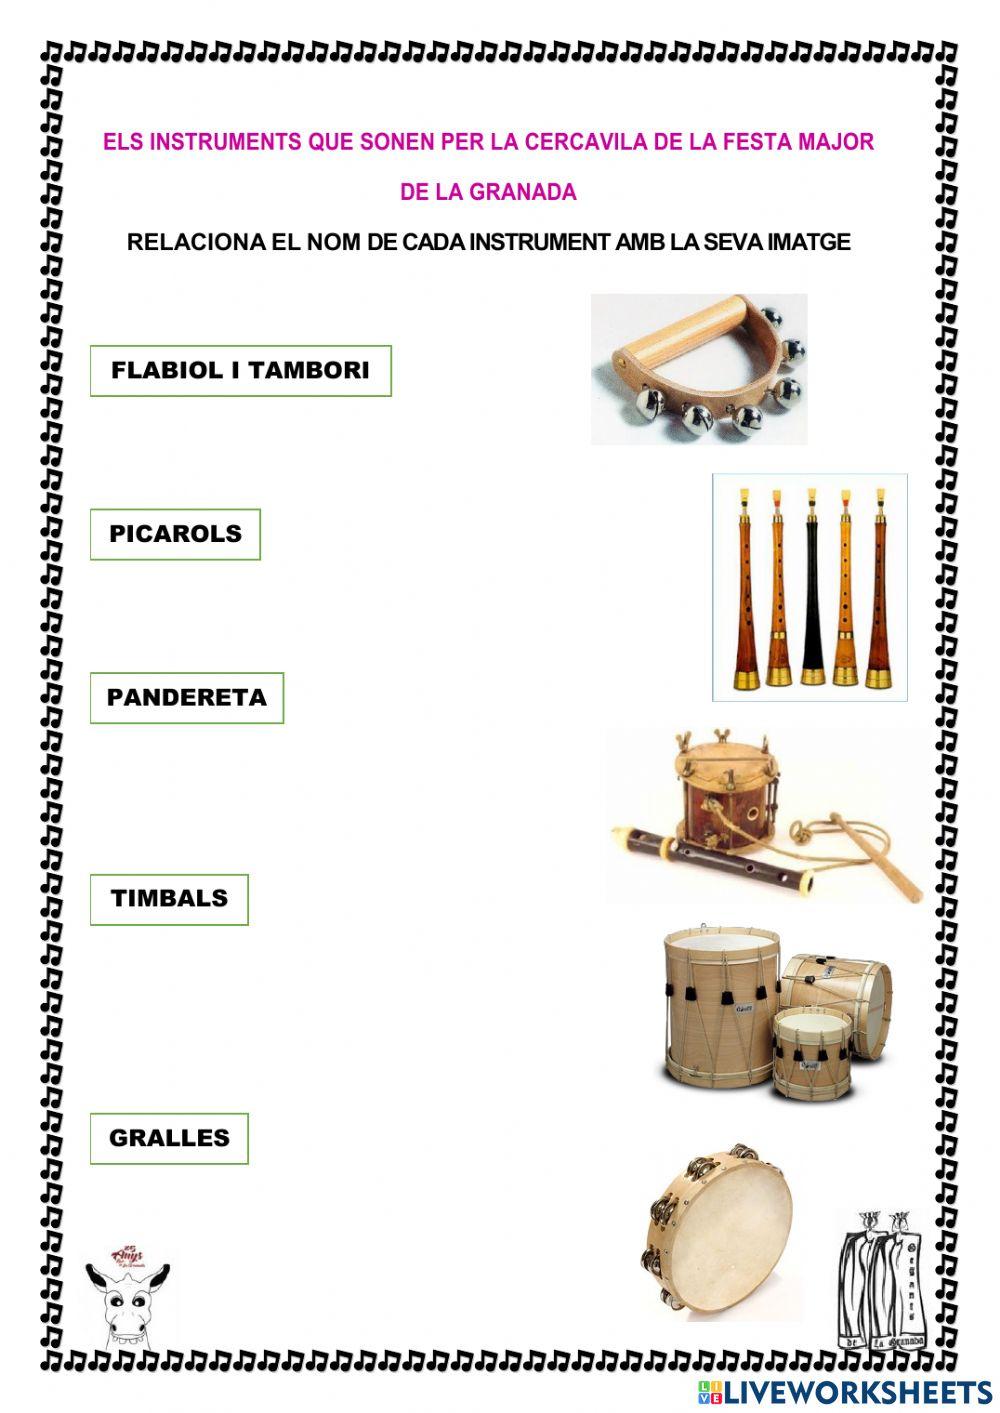 Els instruments de la Festa Major